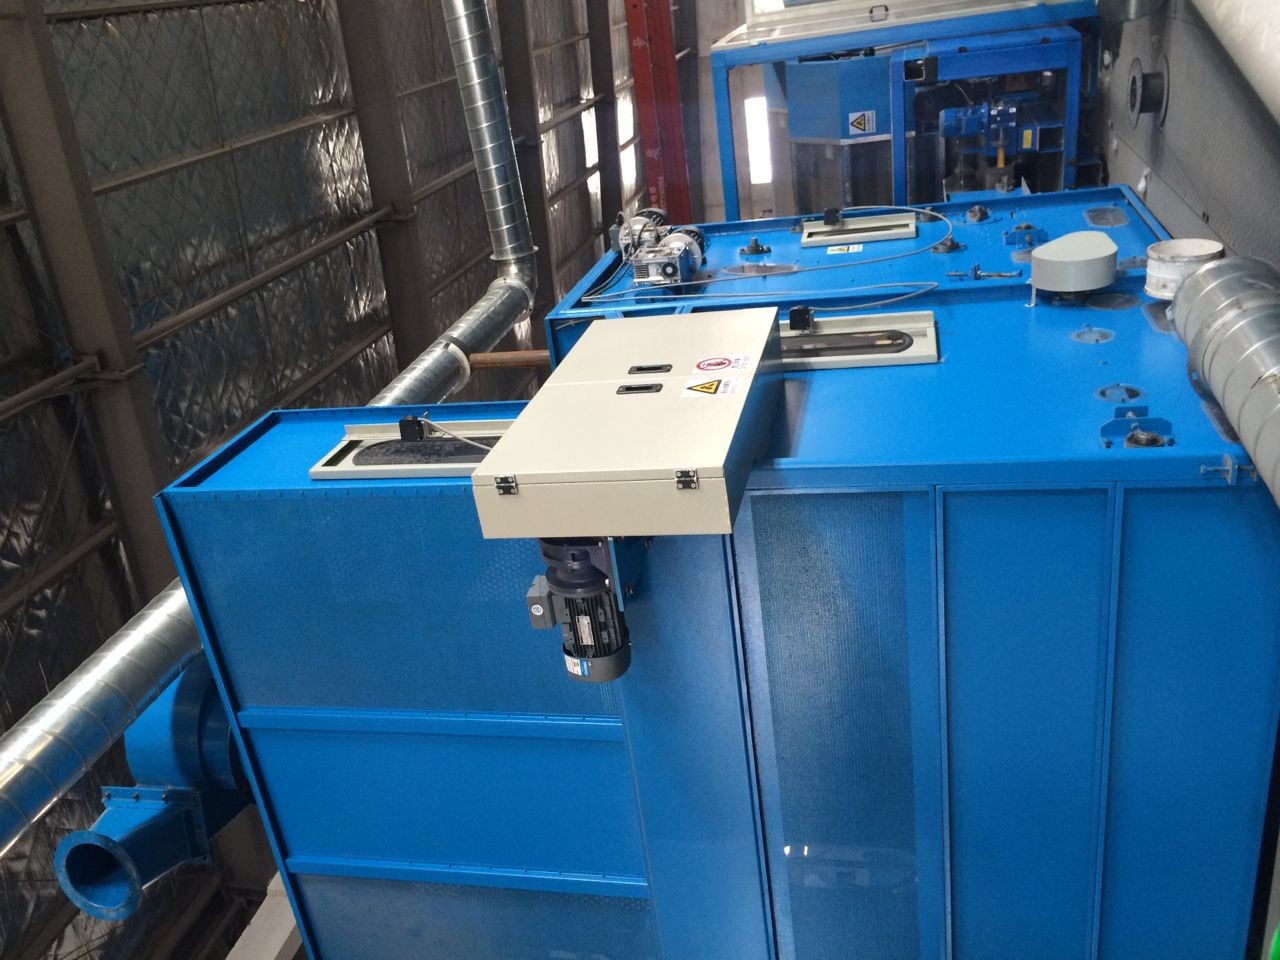 Equipamento vibratório de vibração azul da seleção do motor de Siemens Beide do alimentador do funil